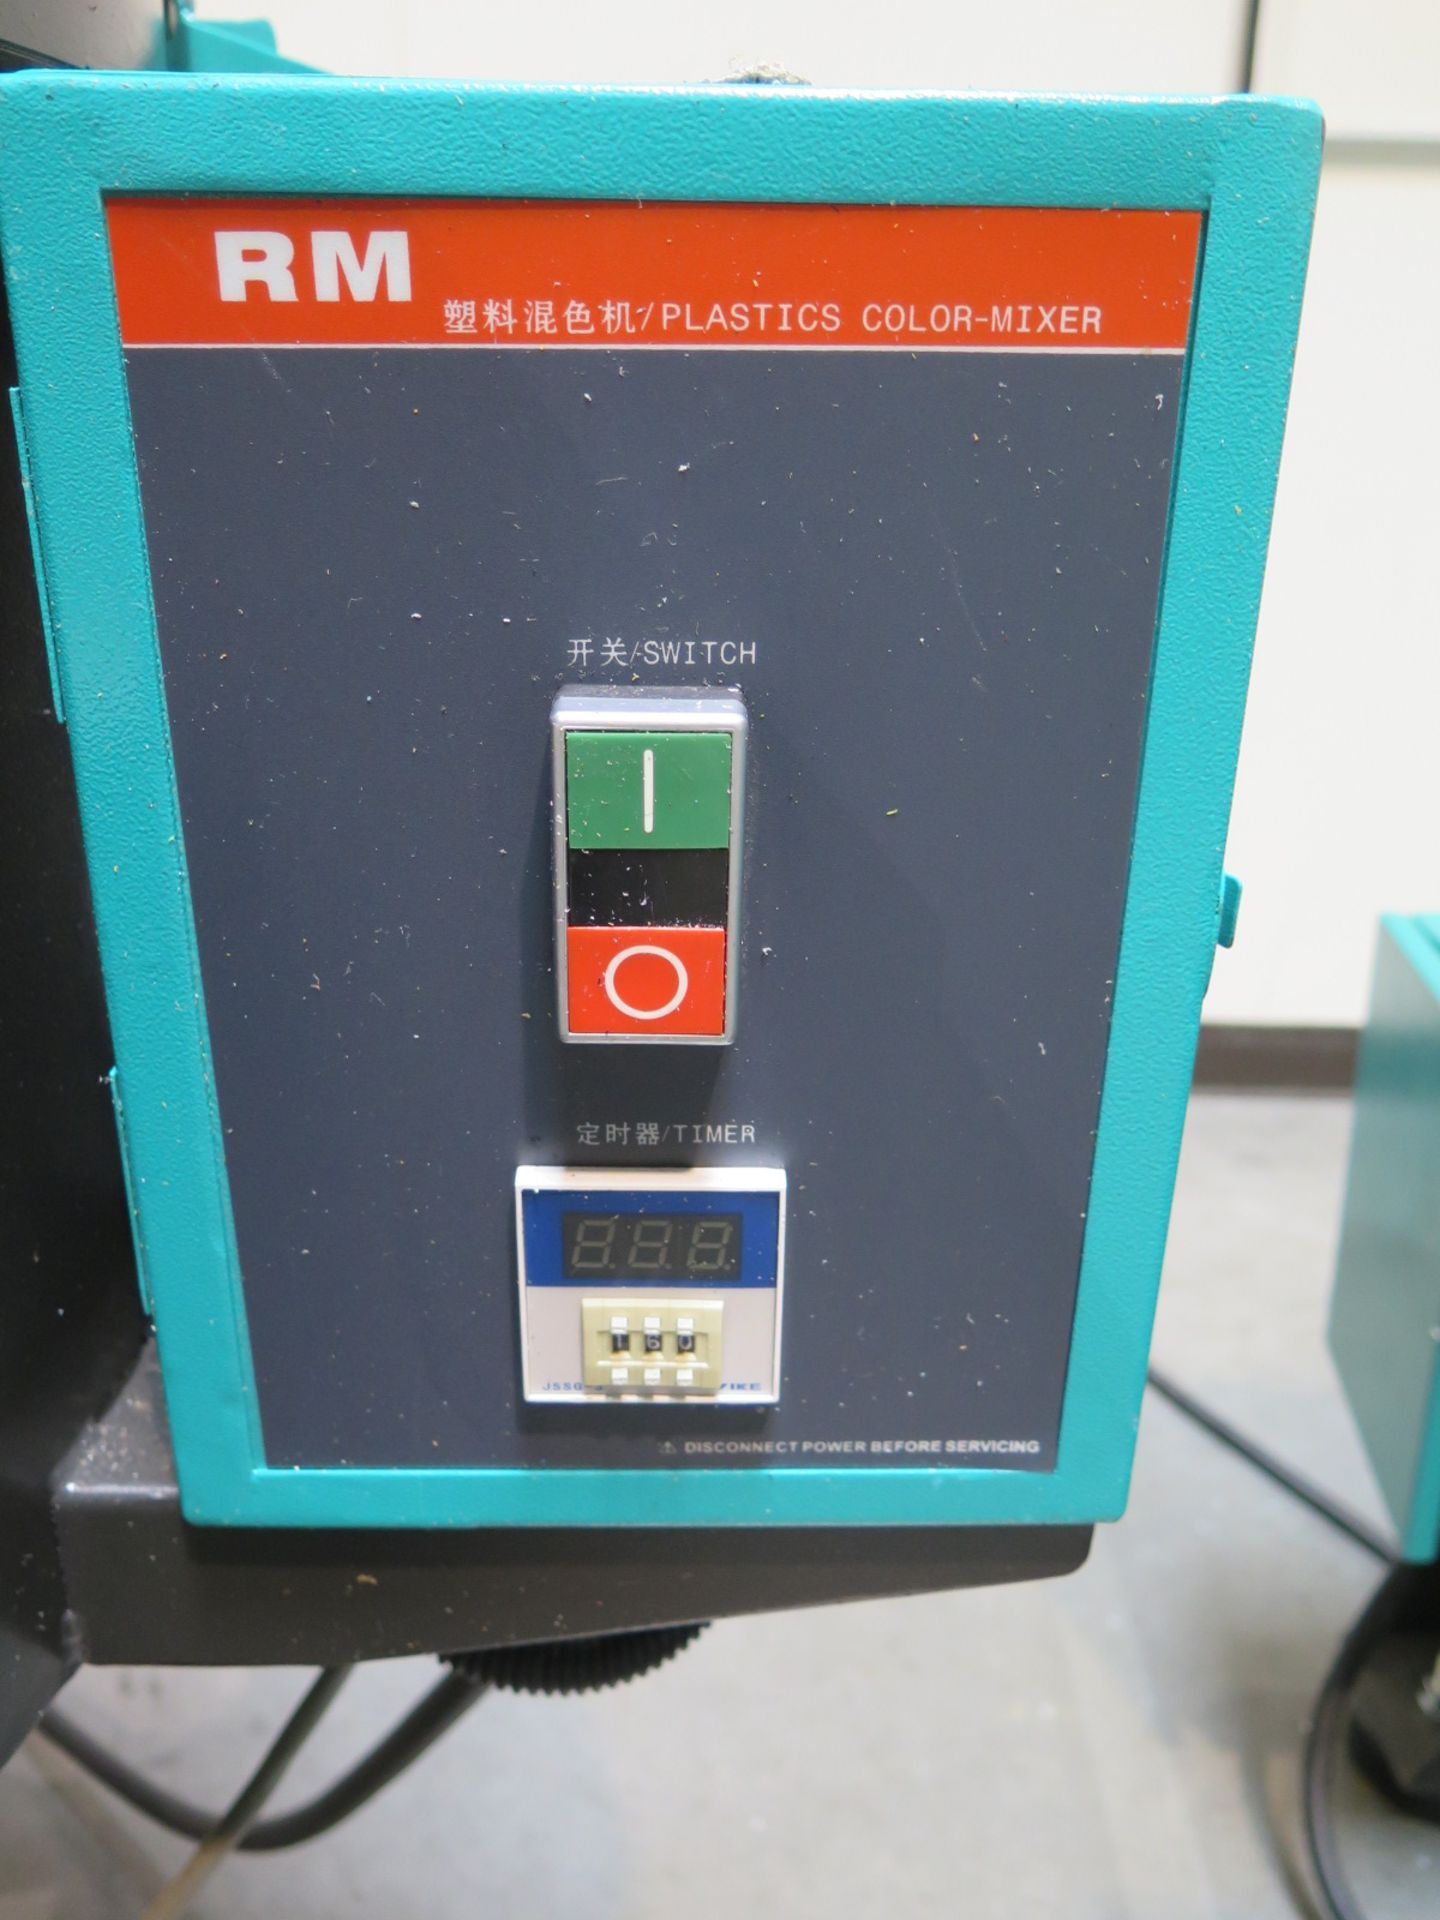 RM Plastics Color Mixer - Image 3 of 4